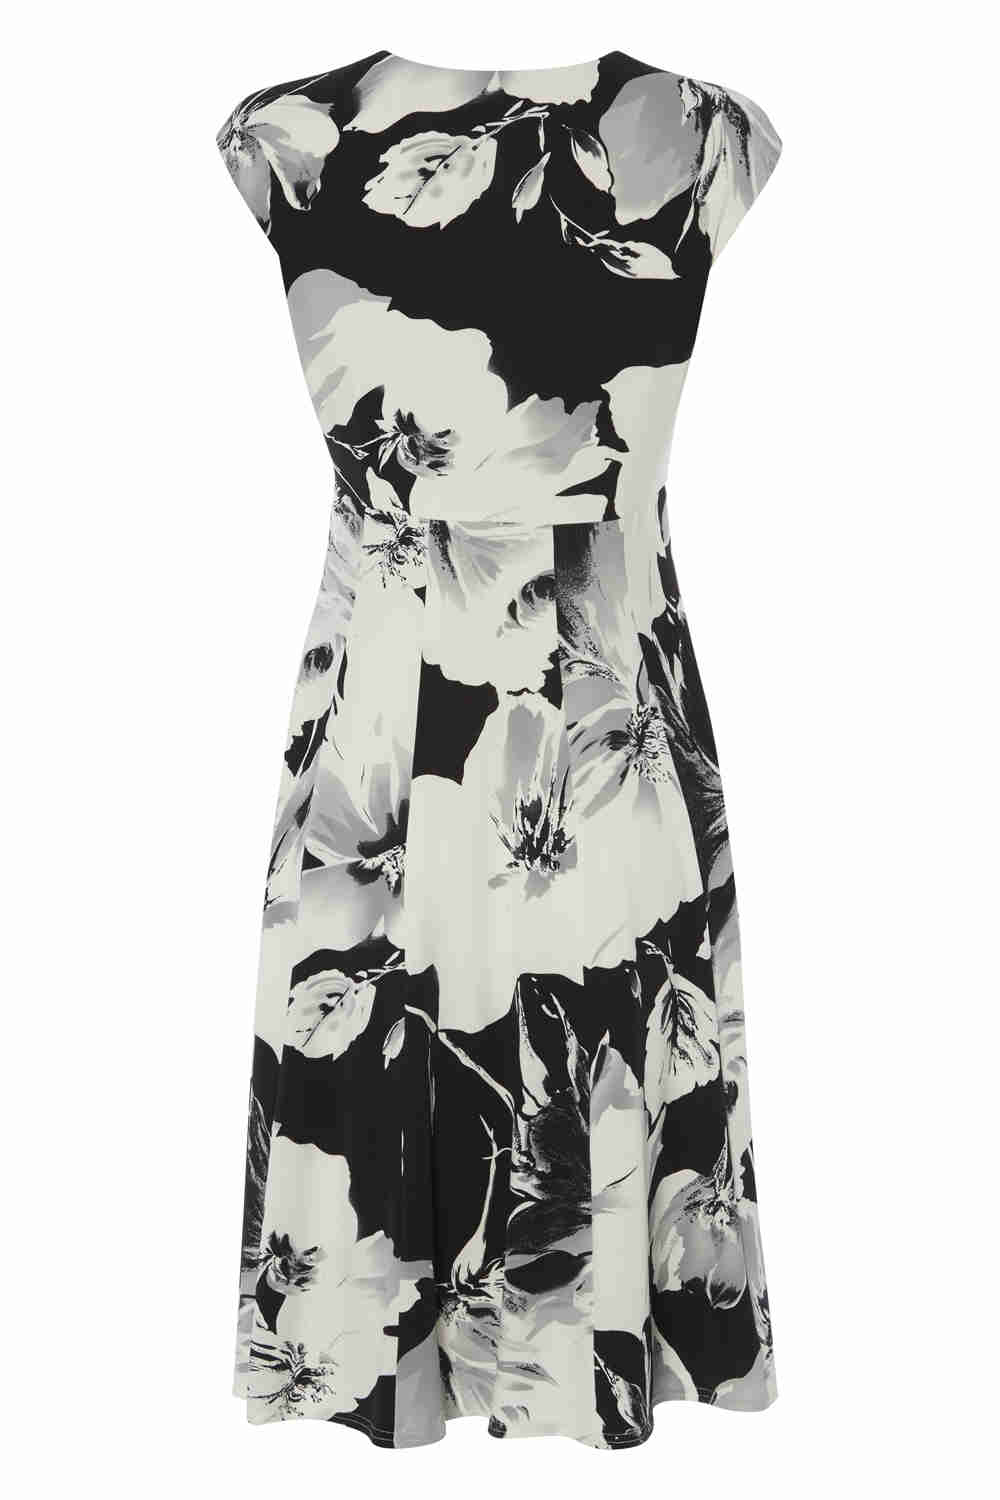 Black Floral Printed Skater Dress, Image 4 of 5